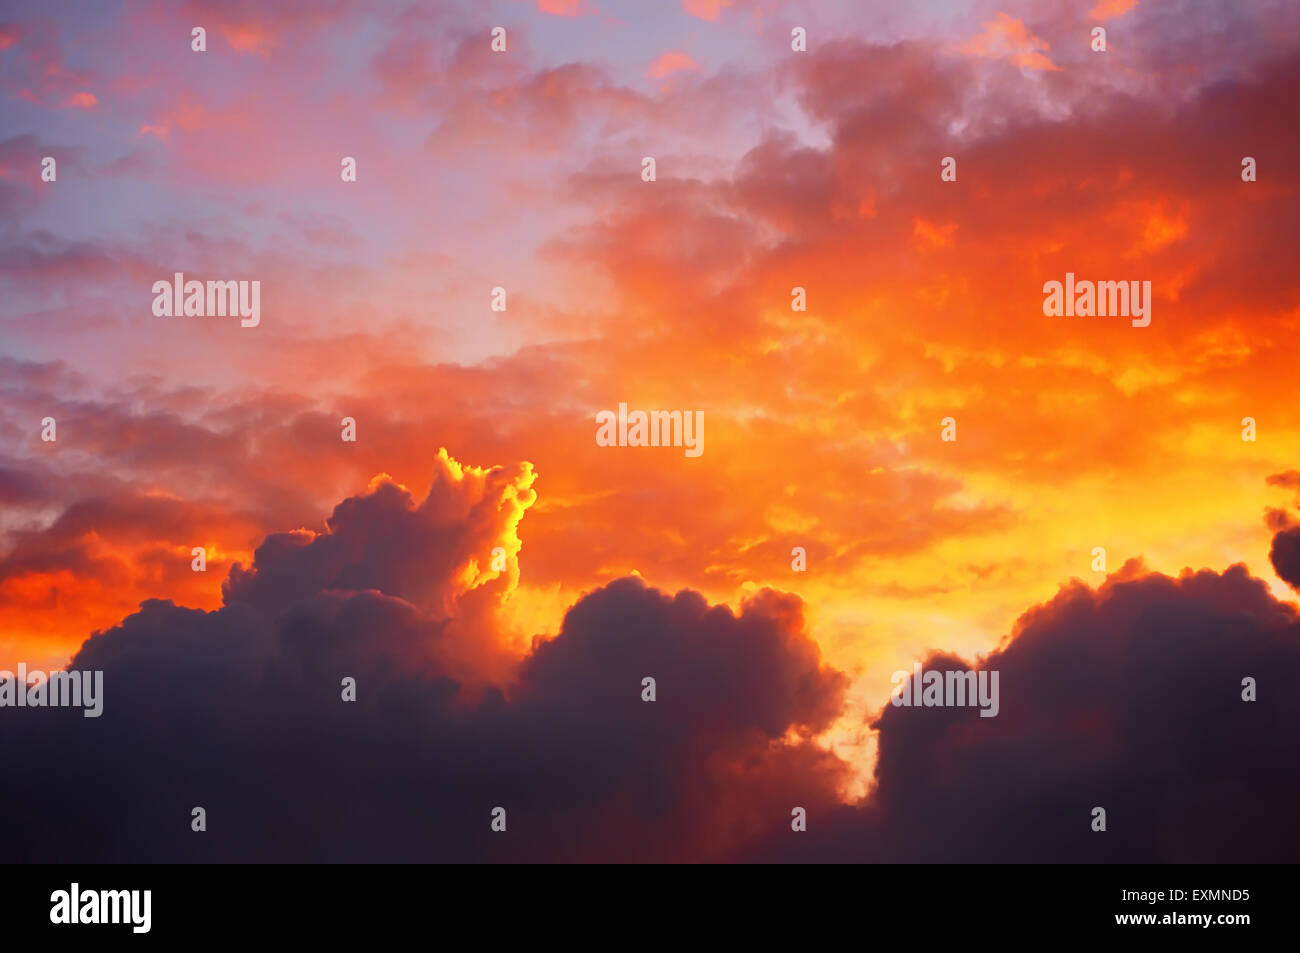 Wolkengebilde bei Sonnenuntergang mit dramatischen roten Wolken Stockfoto